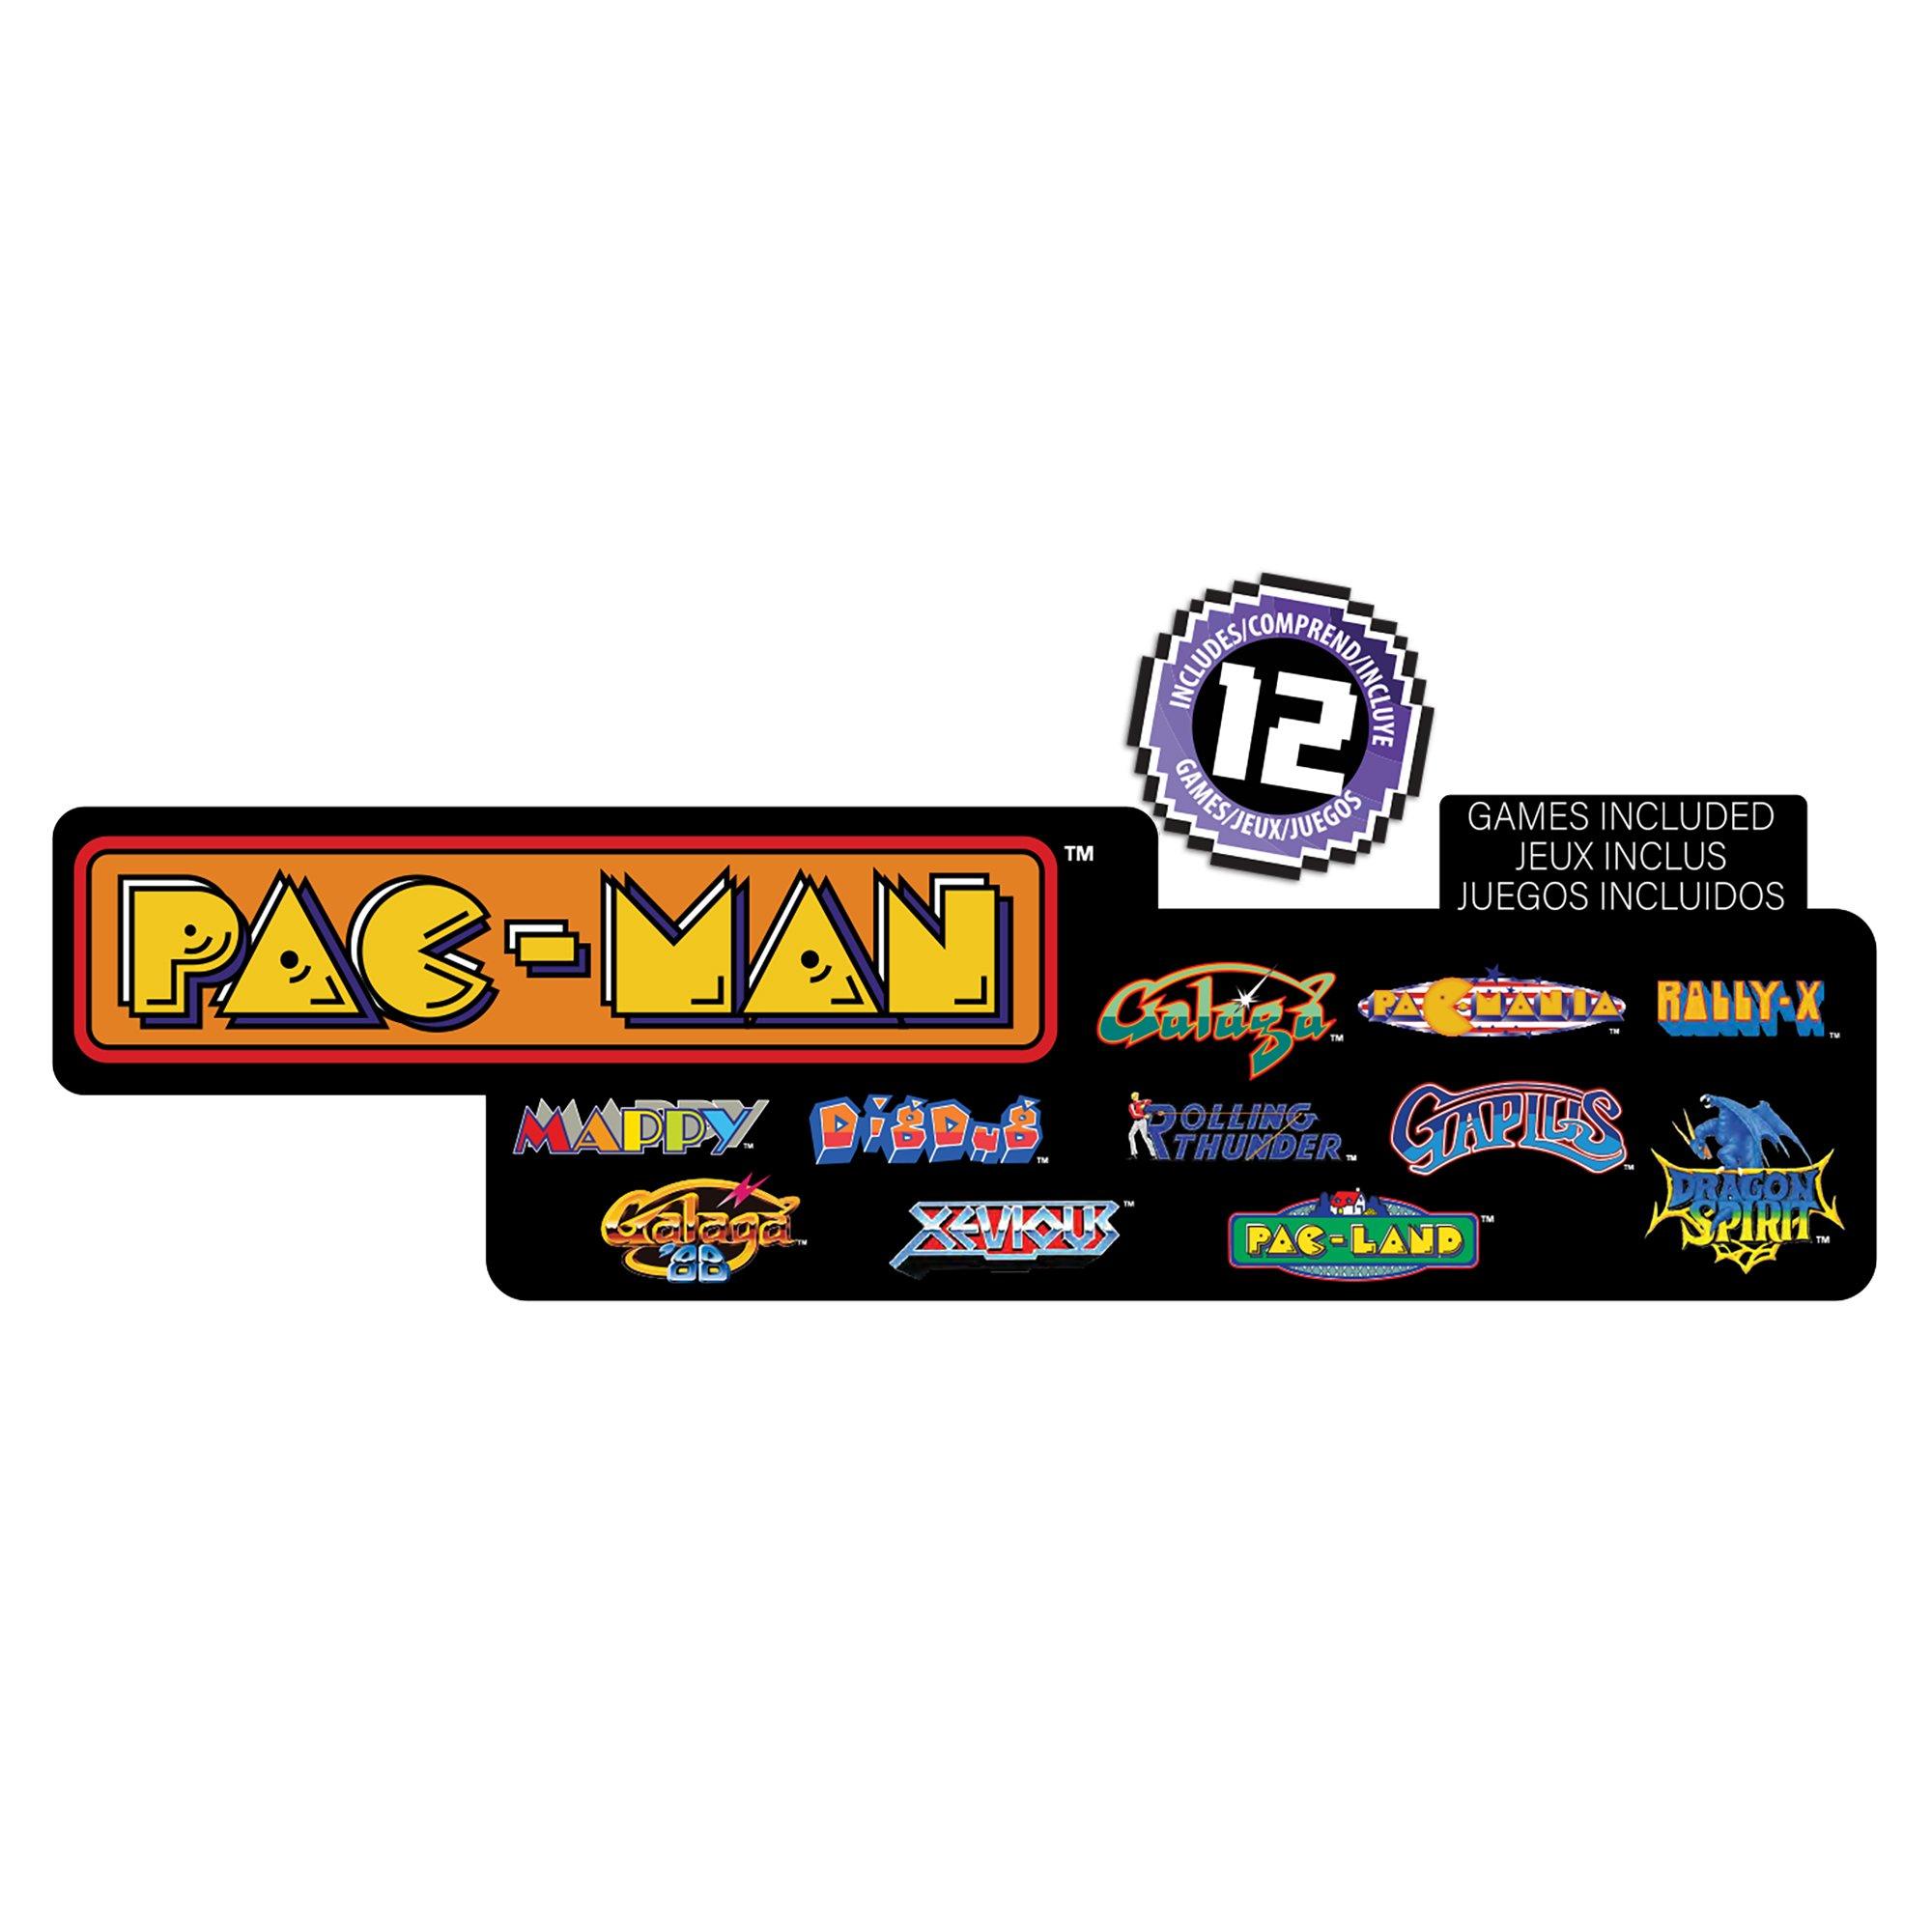 Arcade1Up Projector-Cade Pac-Man Arcade Game Projector